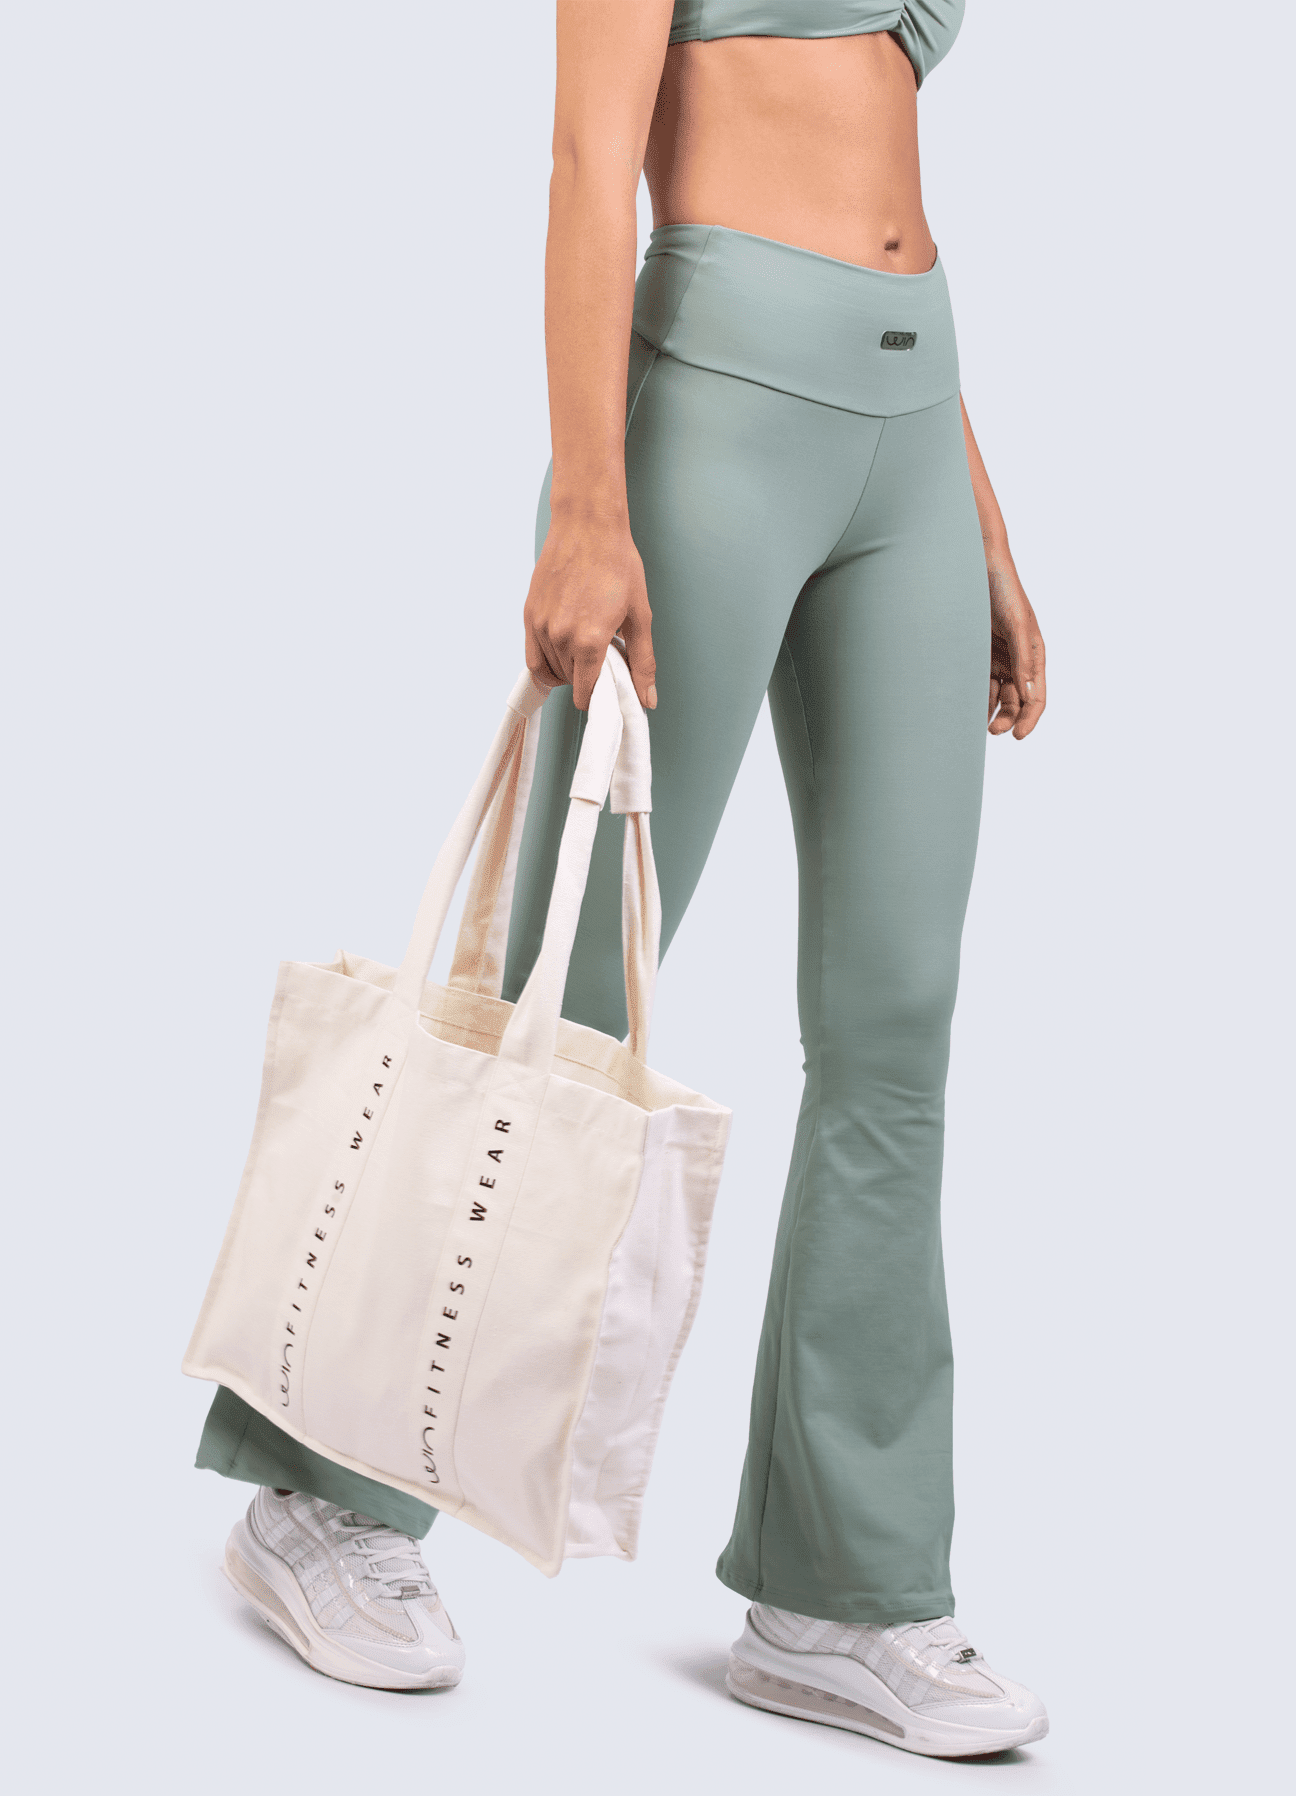 Tote Bag Win ACCESORIOS DE VESTIR WinFitnesswear#beige